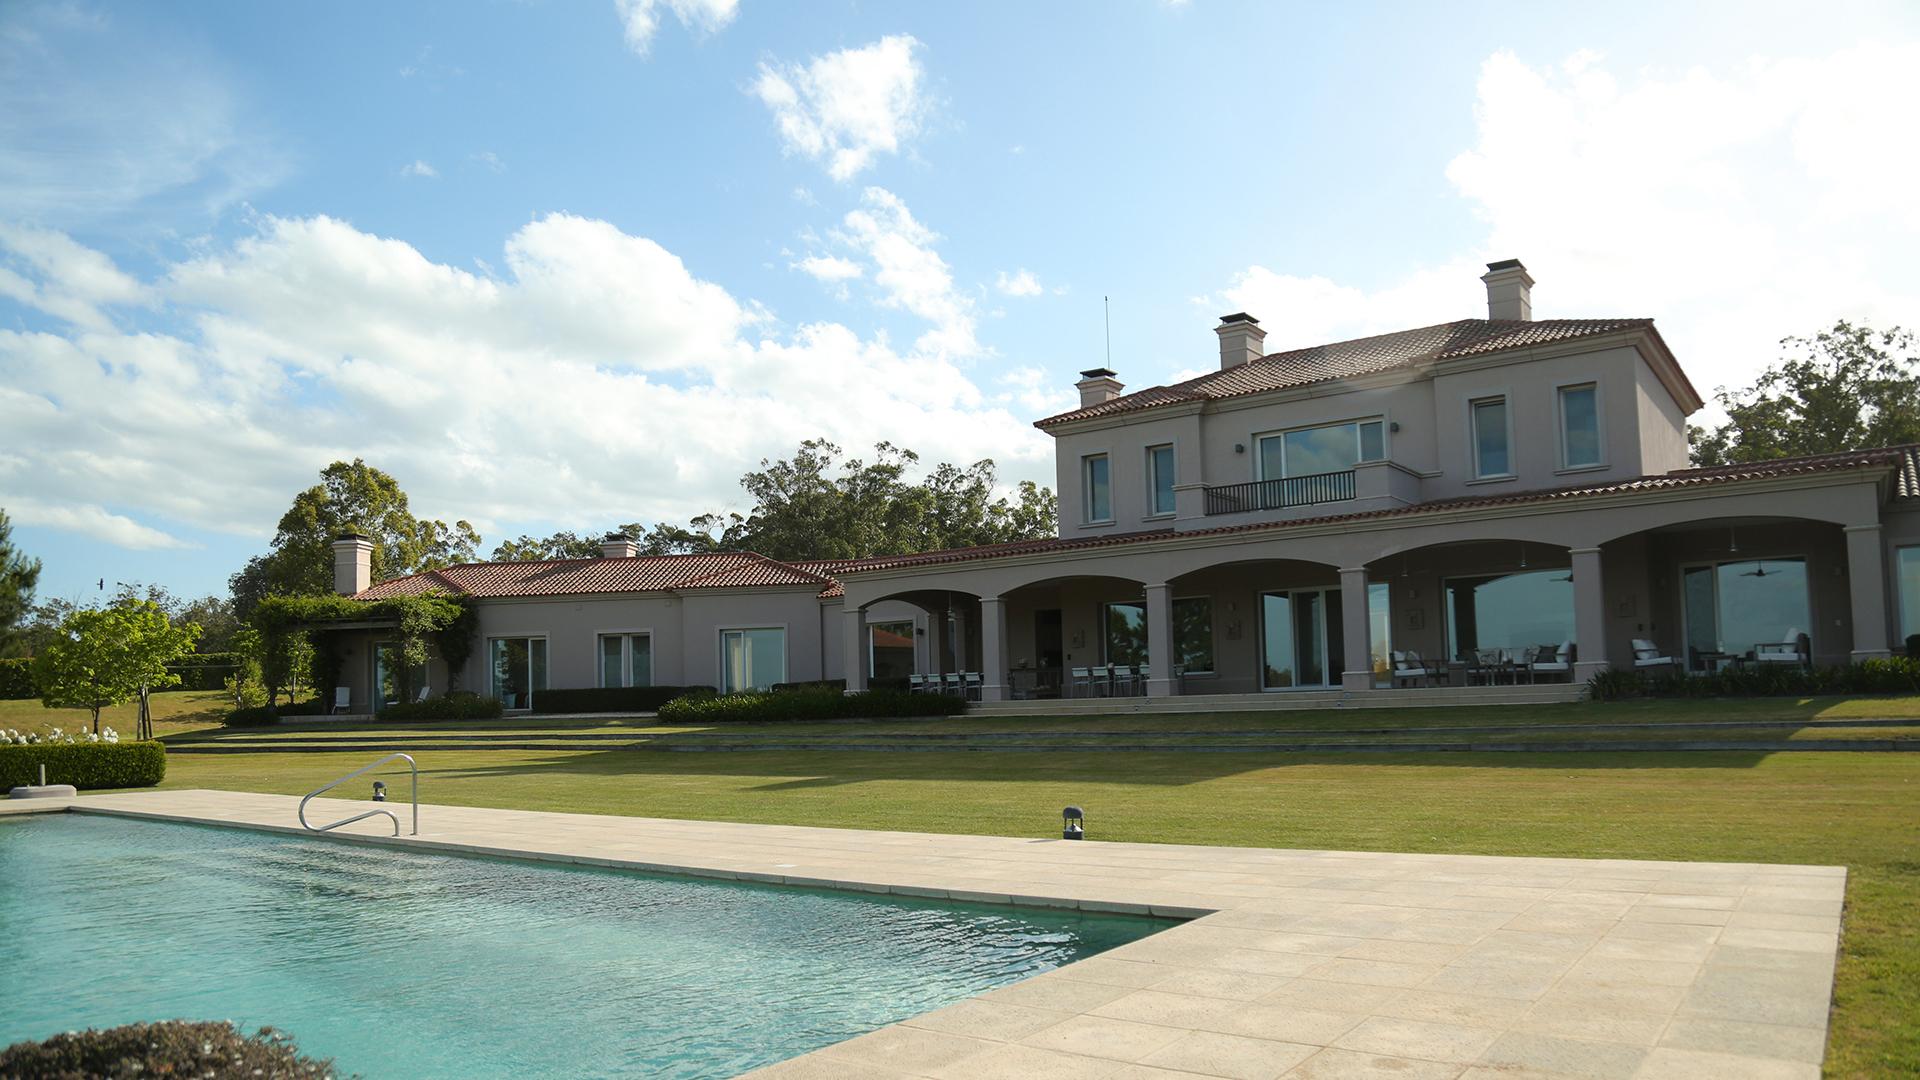 Exceptional Tuscan Style Villa located in Manantiales, Punta del Este, Uruguay, listed by Curiocity Villas.